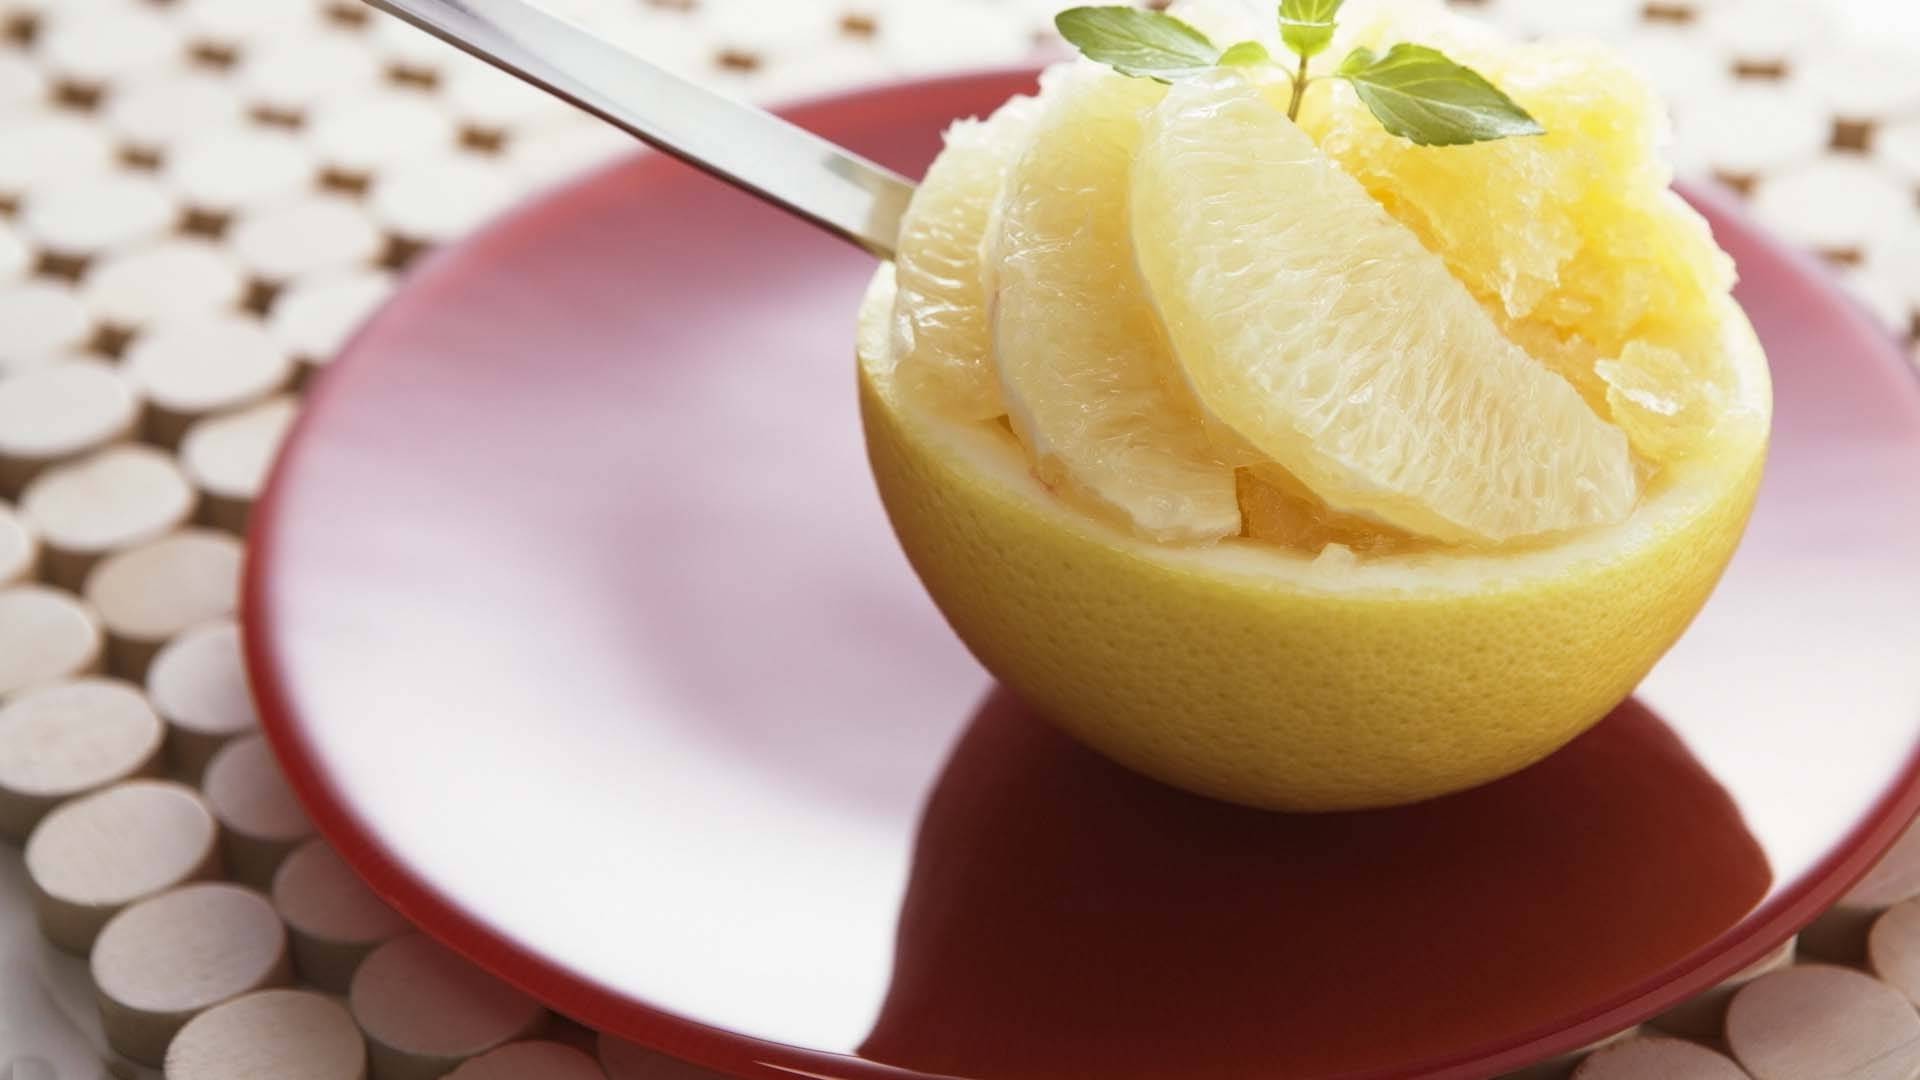 еда и напитки еда нож здоровья завтрак вкусные древесины ингредиенты натюрморт питание в помещении фрукты домашние сахар